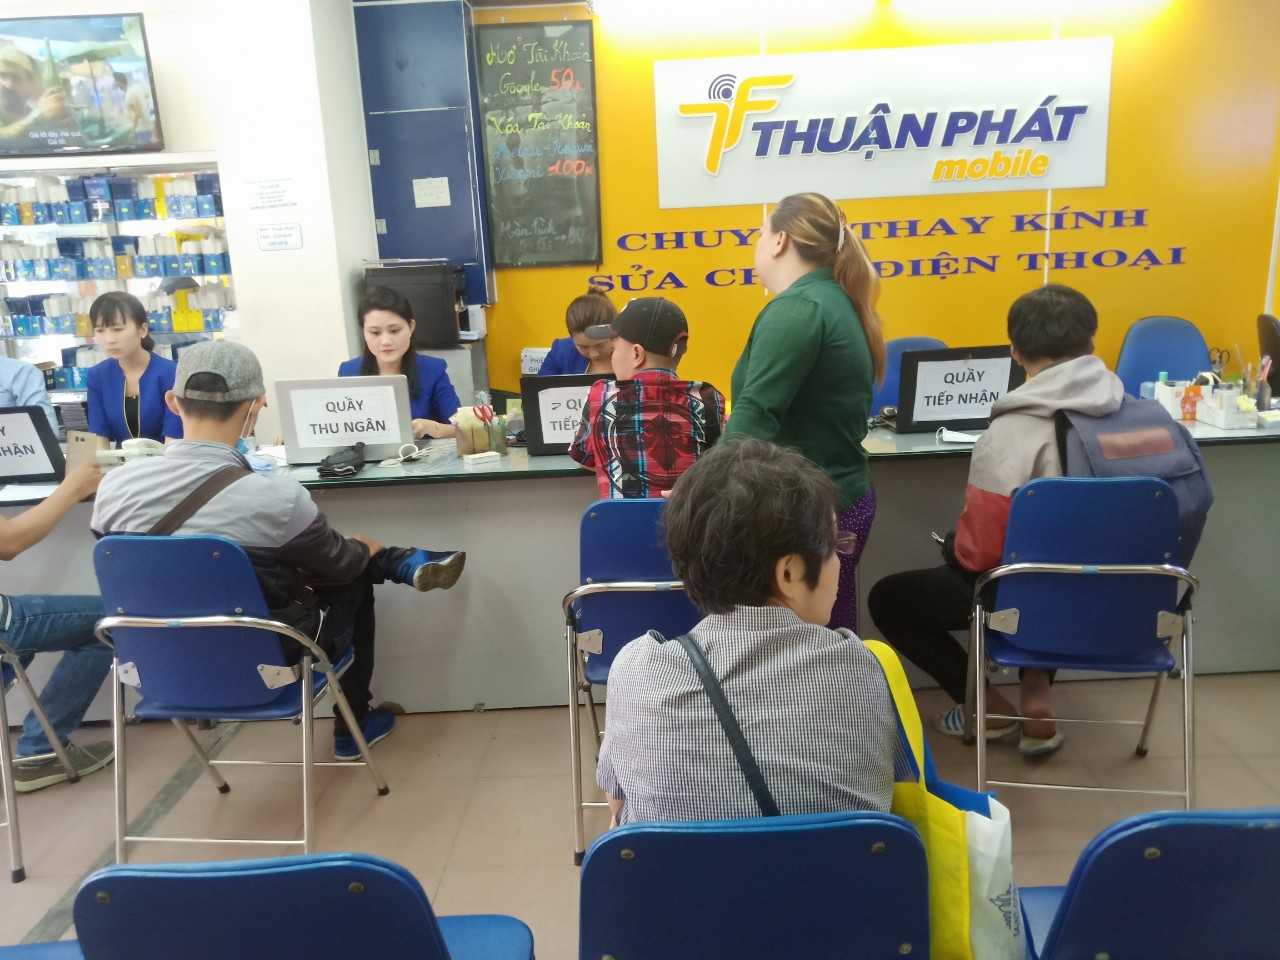 Thuận Phát Mobile - trung tâm sửa chữa điện thoại uy tín